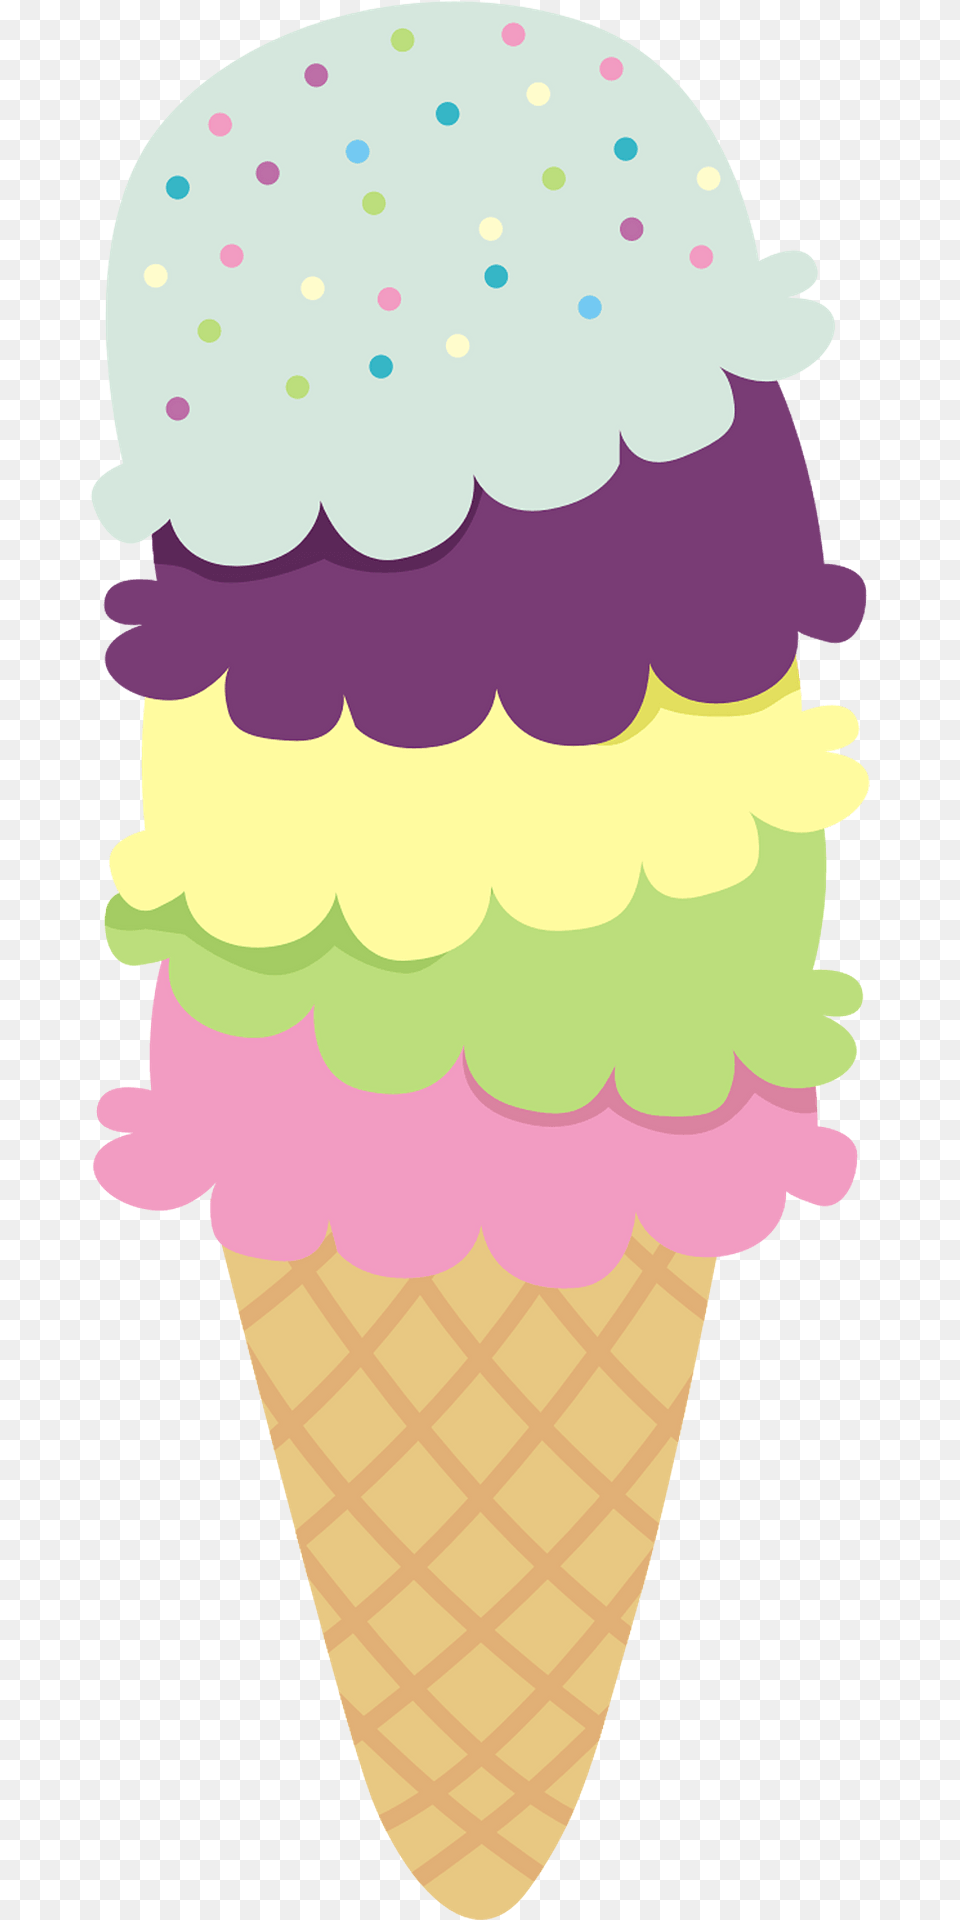 Ice Cream Cone Clipart, Dessert, Food, Ice Cream, Person Free Transparent Png